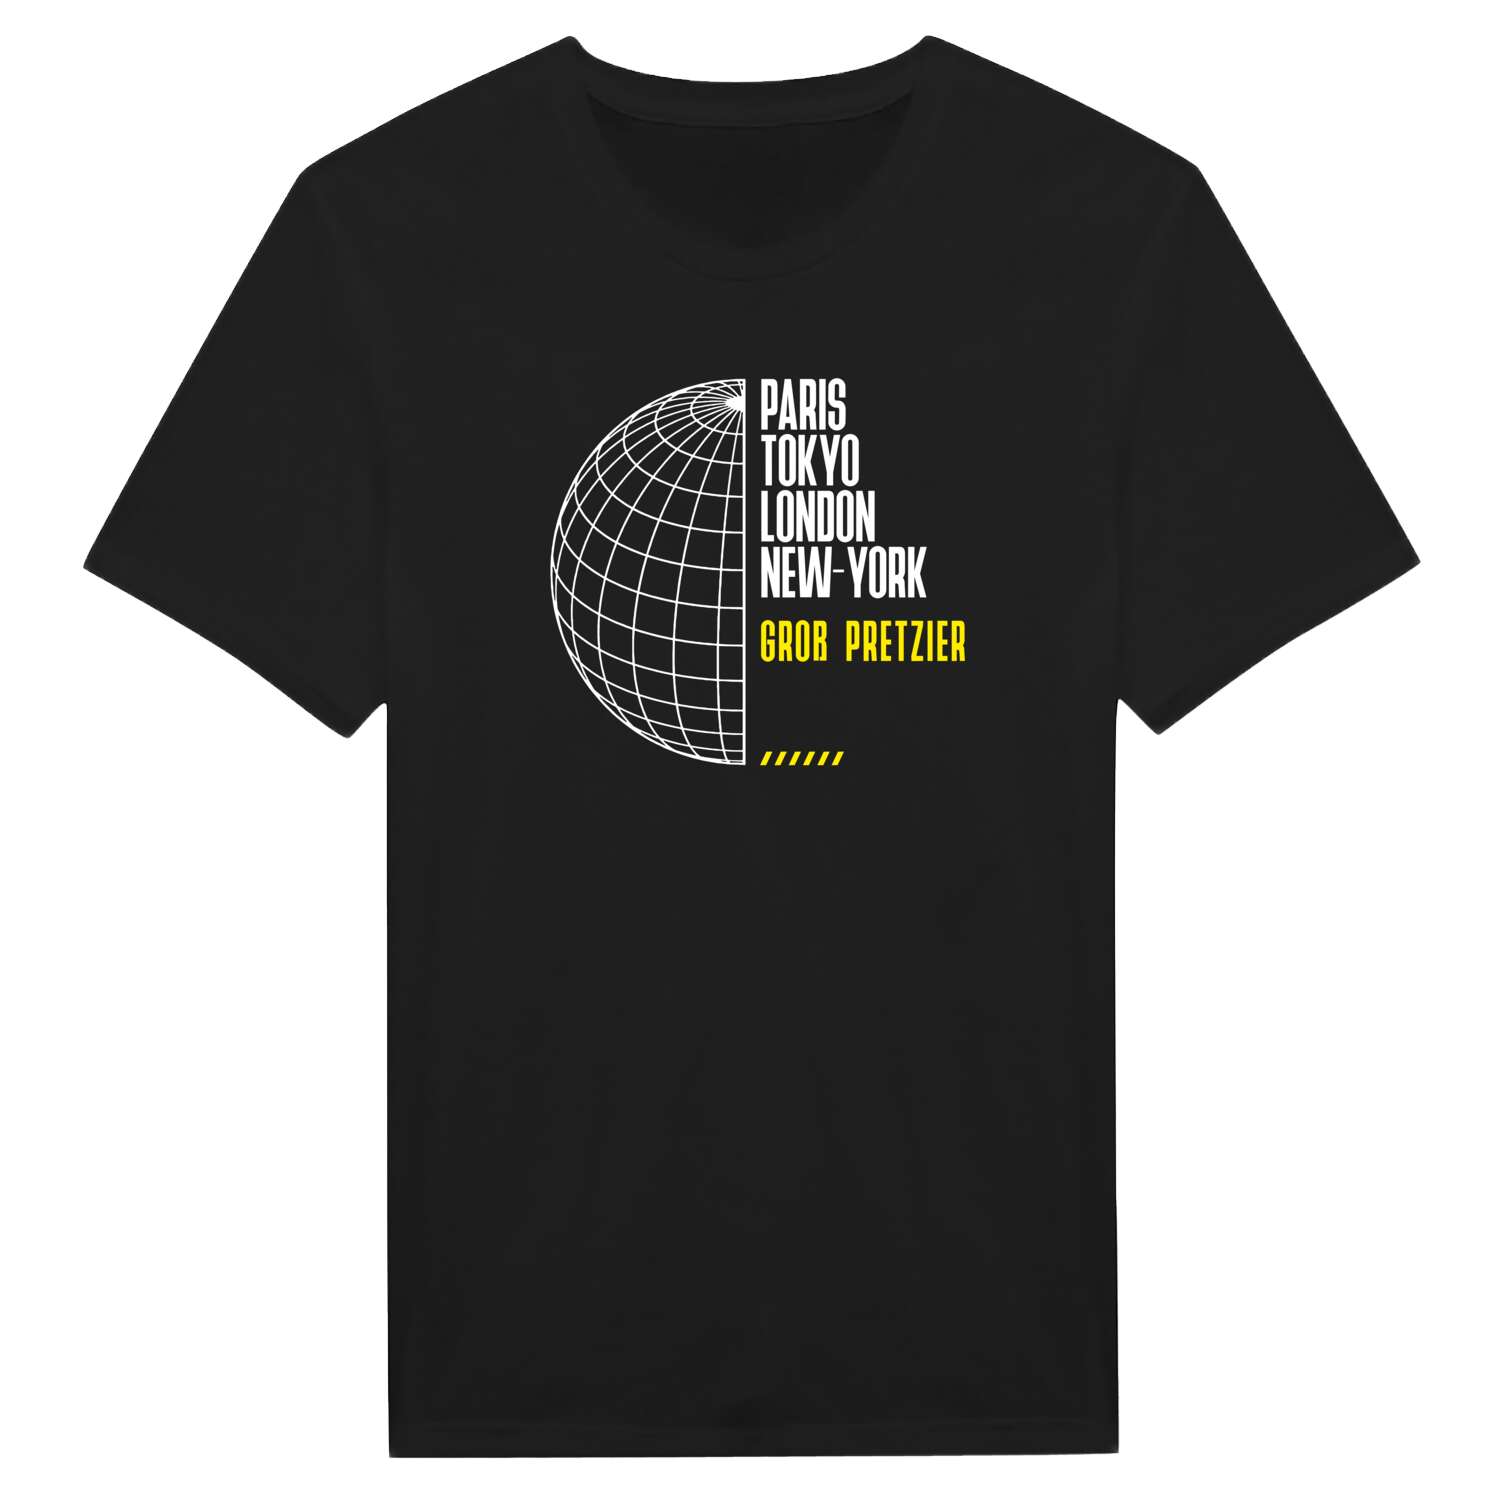 Groß Pretzier T-Shirt »Paris Tokyo London«